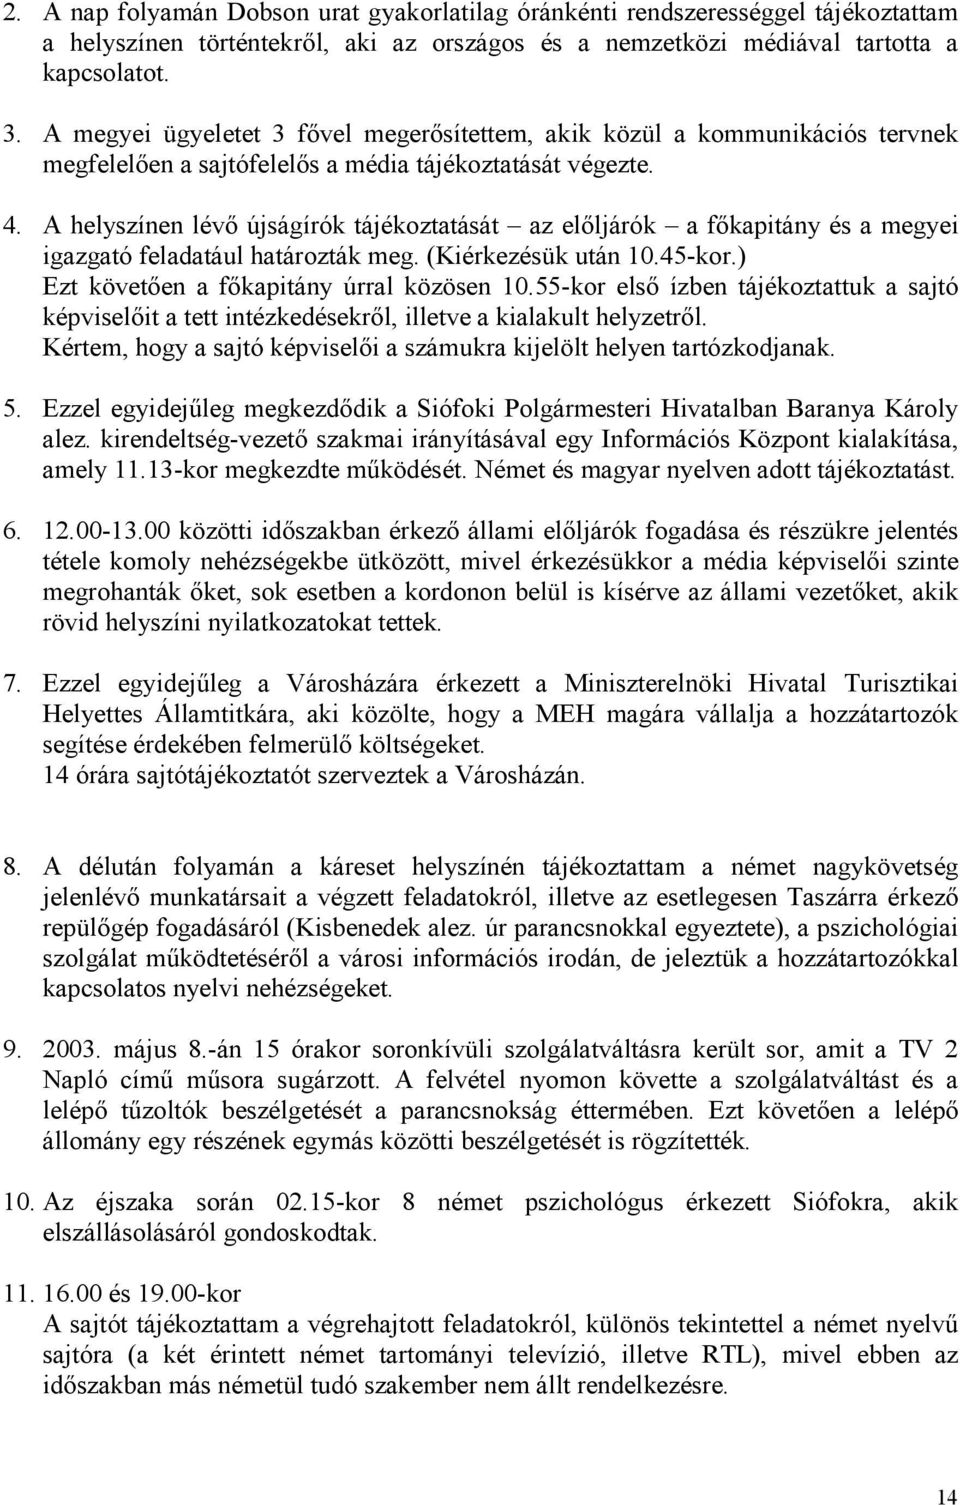 A helyszínen lévı újságírók tájékoztatását az elıljárók a fıkapitány és a megyei igazgató feladatául határozták meg. (Kiérkezésük után 10.45-kor.) Ezt követıen a fıkapitány úrral közösen 10.